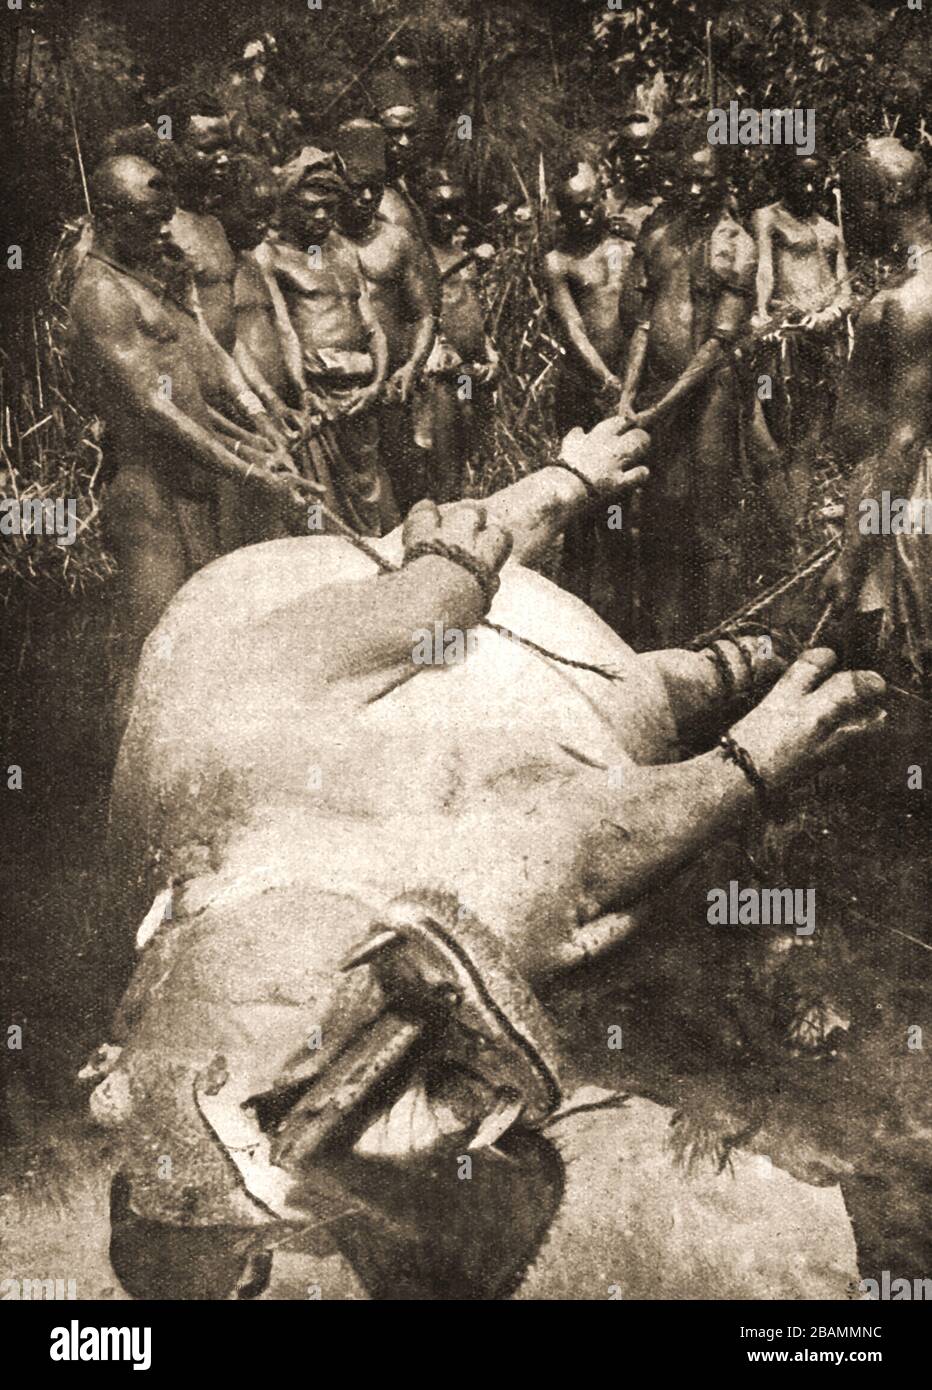 C1930 Tribesman autochtone avec un hippopotame pour la nourriture ayant utilisé seulement des lances et la technique commune de blocage d'un journal dans sa bouche pour se protéger pendant la mort. Banque D'Images